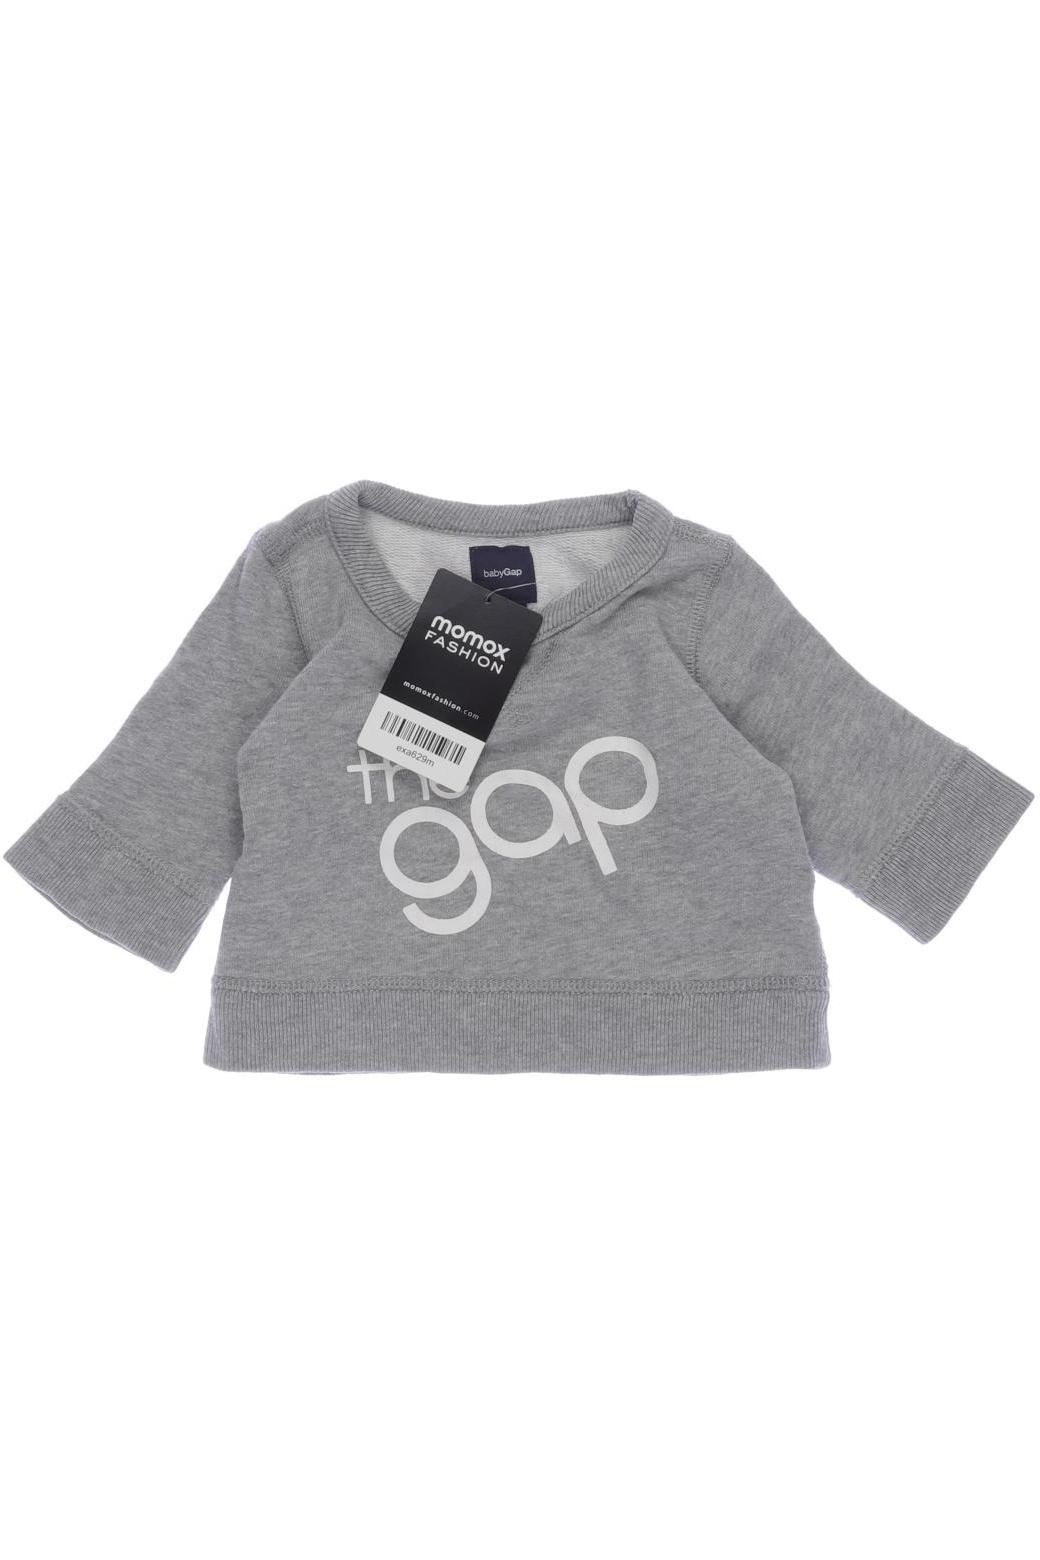 GAP Damen Hoodies & Sweater, grau, Gr. 50 von GAP